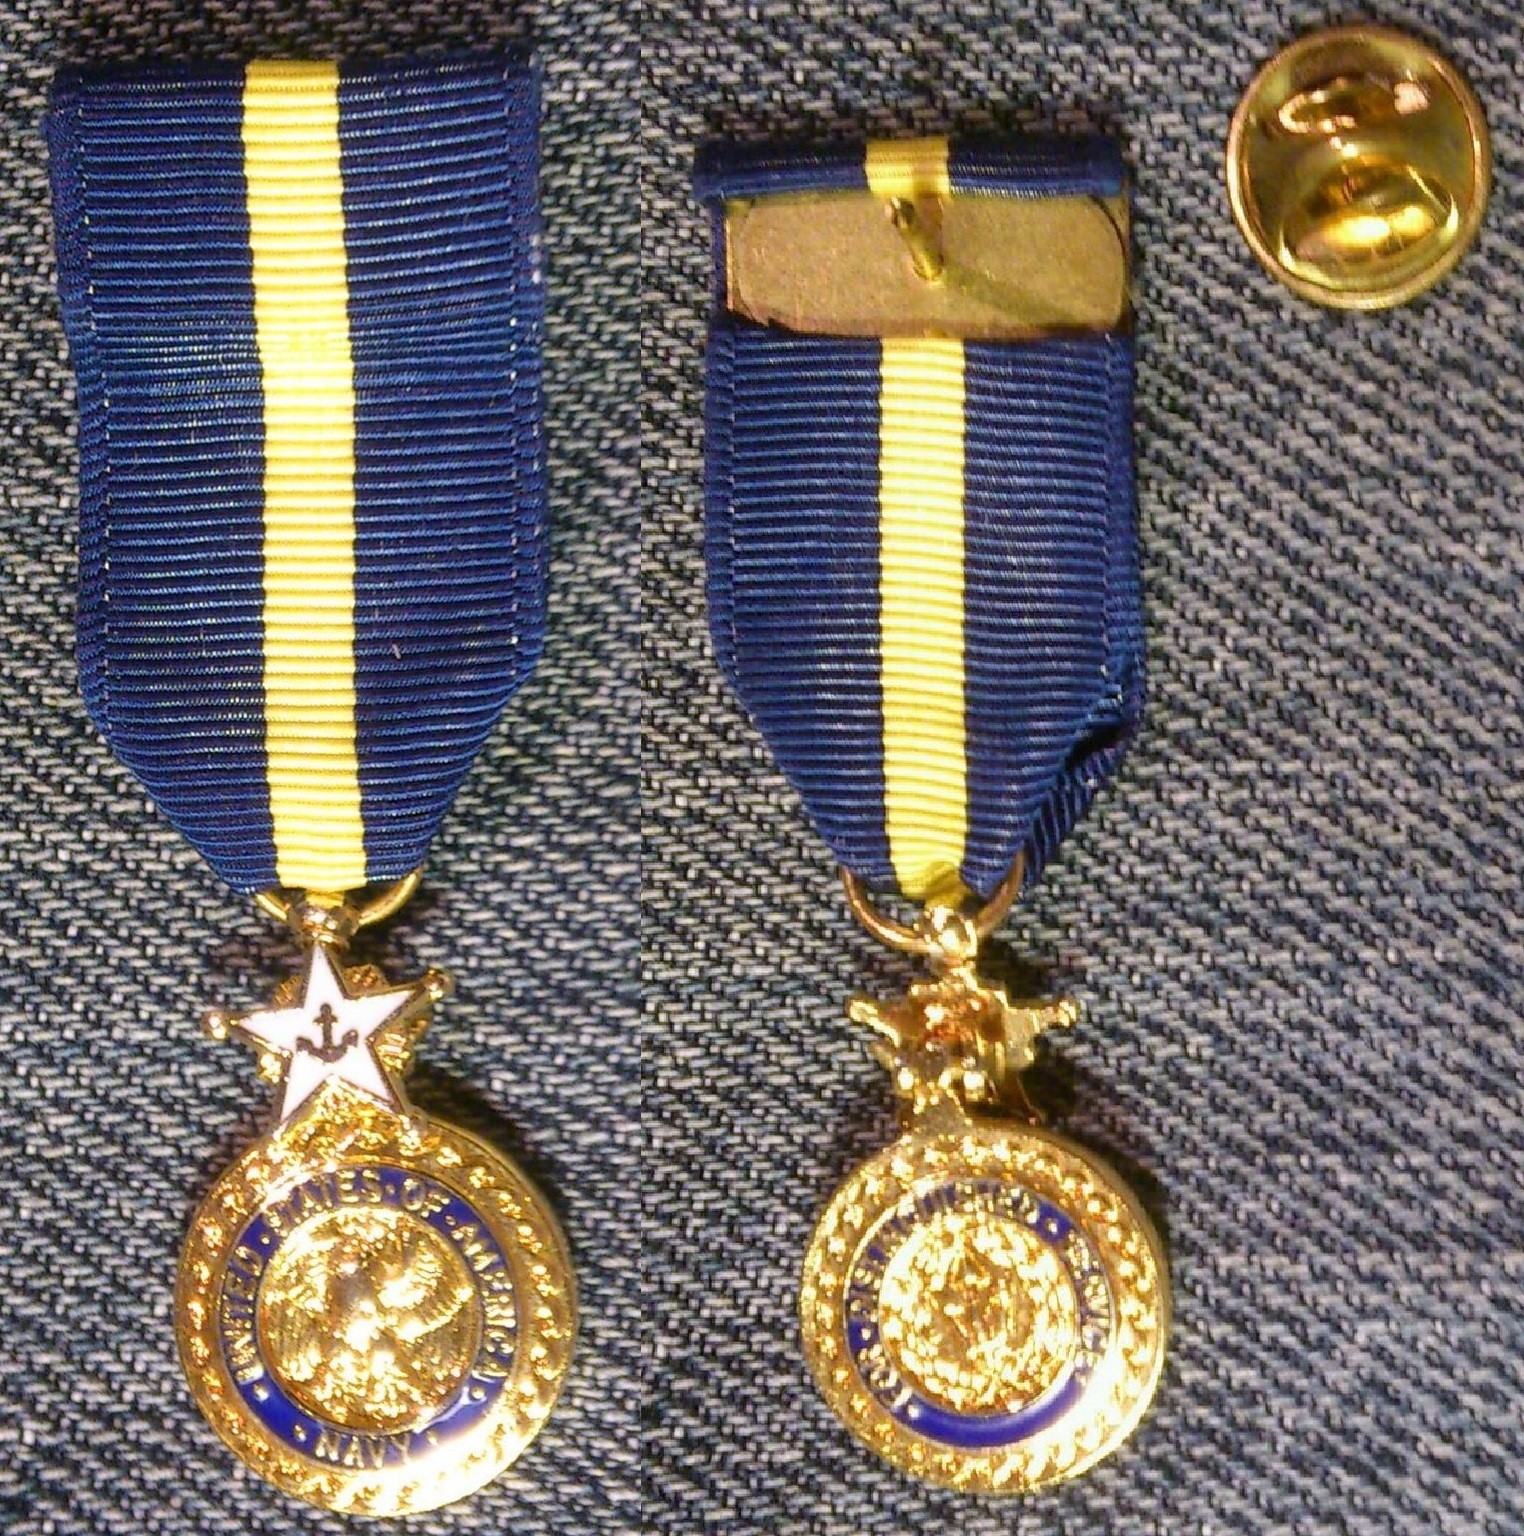 4 medals. Медаль ВМС США. Награды ВМС США. Награды военно-морских сил (США).